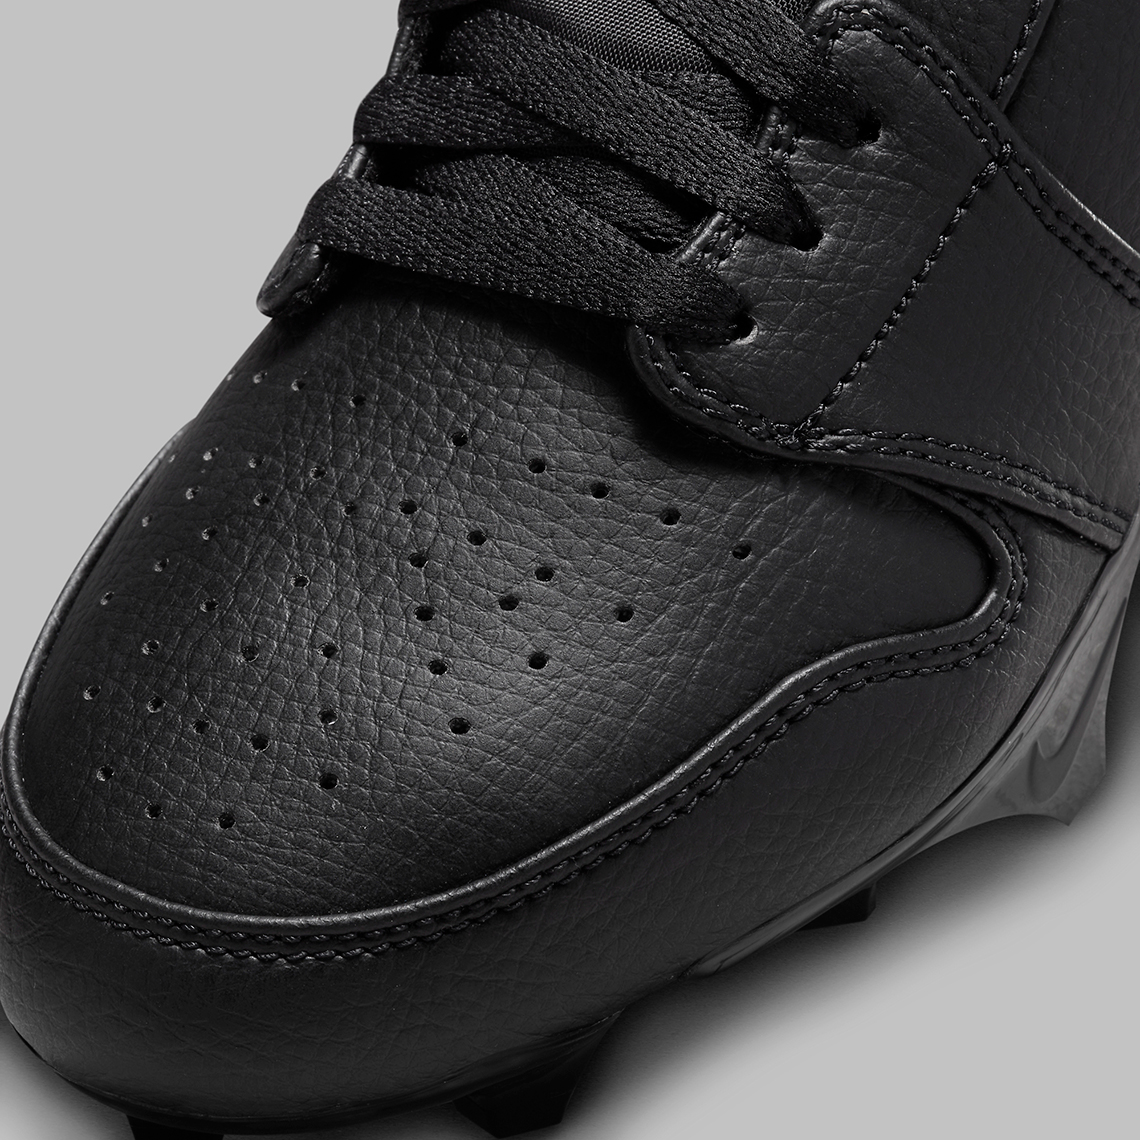 Fabolous Supreme x Air Jordan 5 Camo x Amare Stoudemire Nike Cortez Cleats Black White Fj6245 001 4